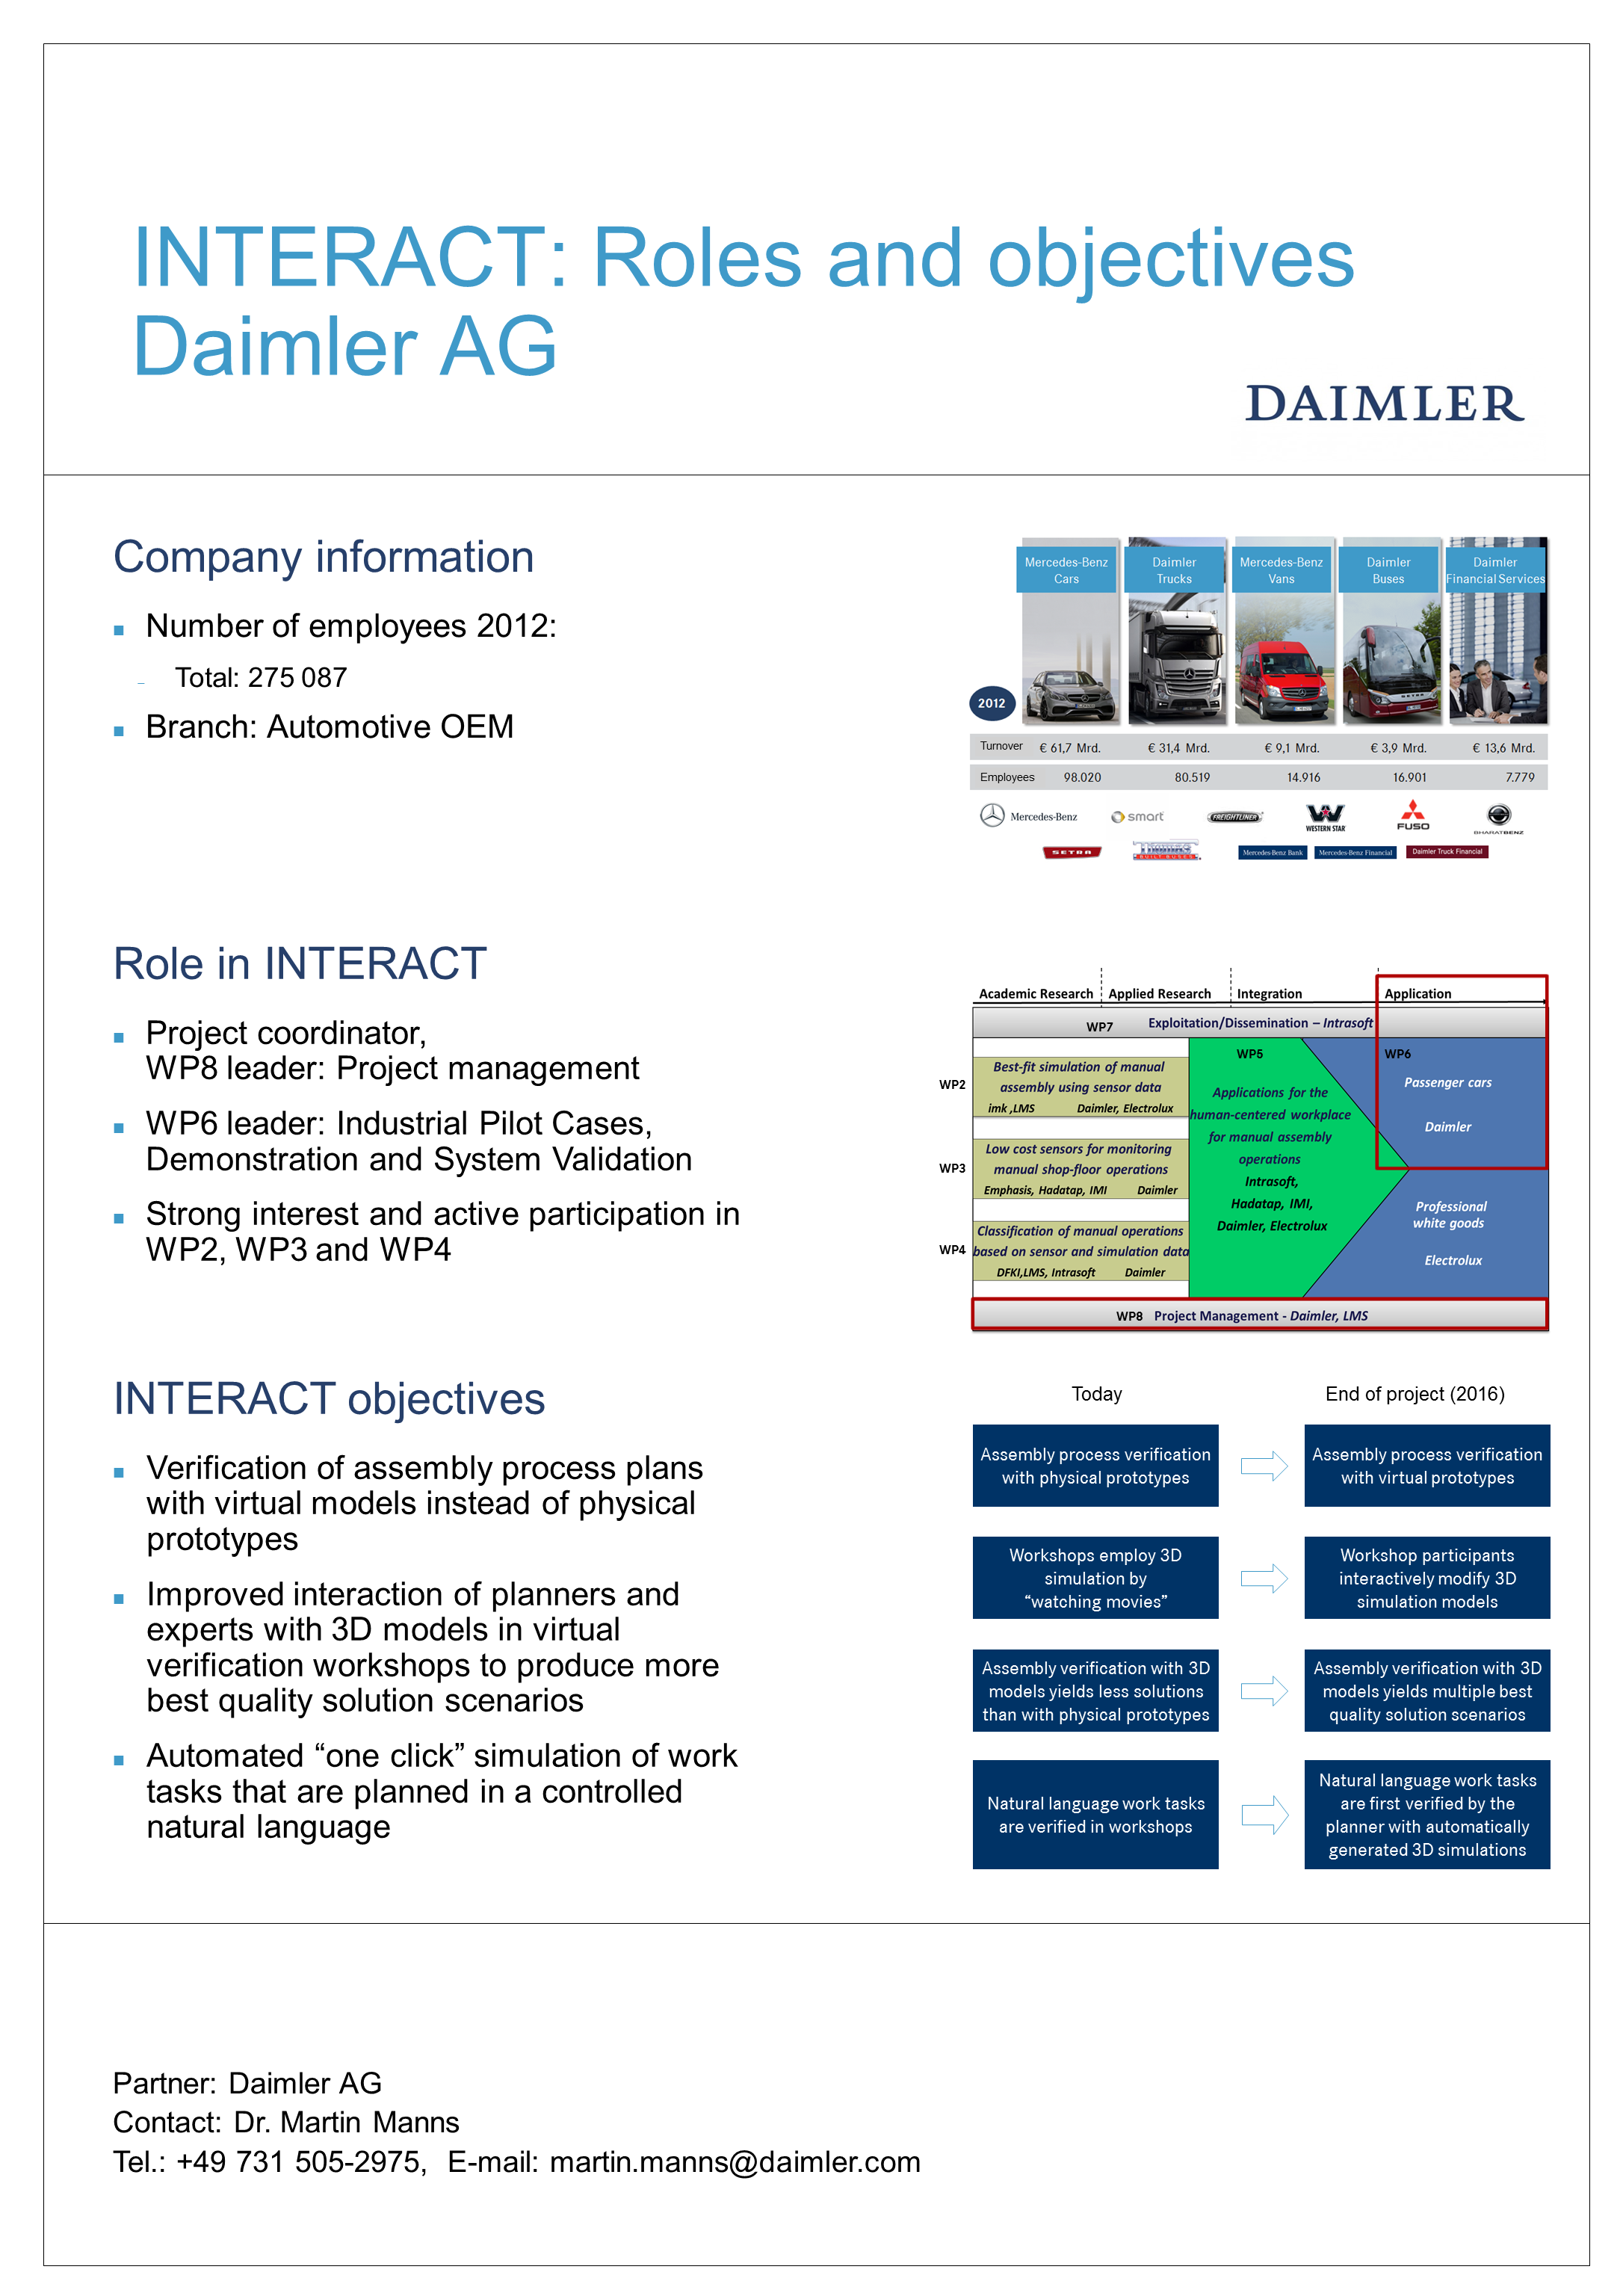 INTERACT Poster Daimler